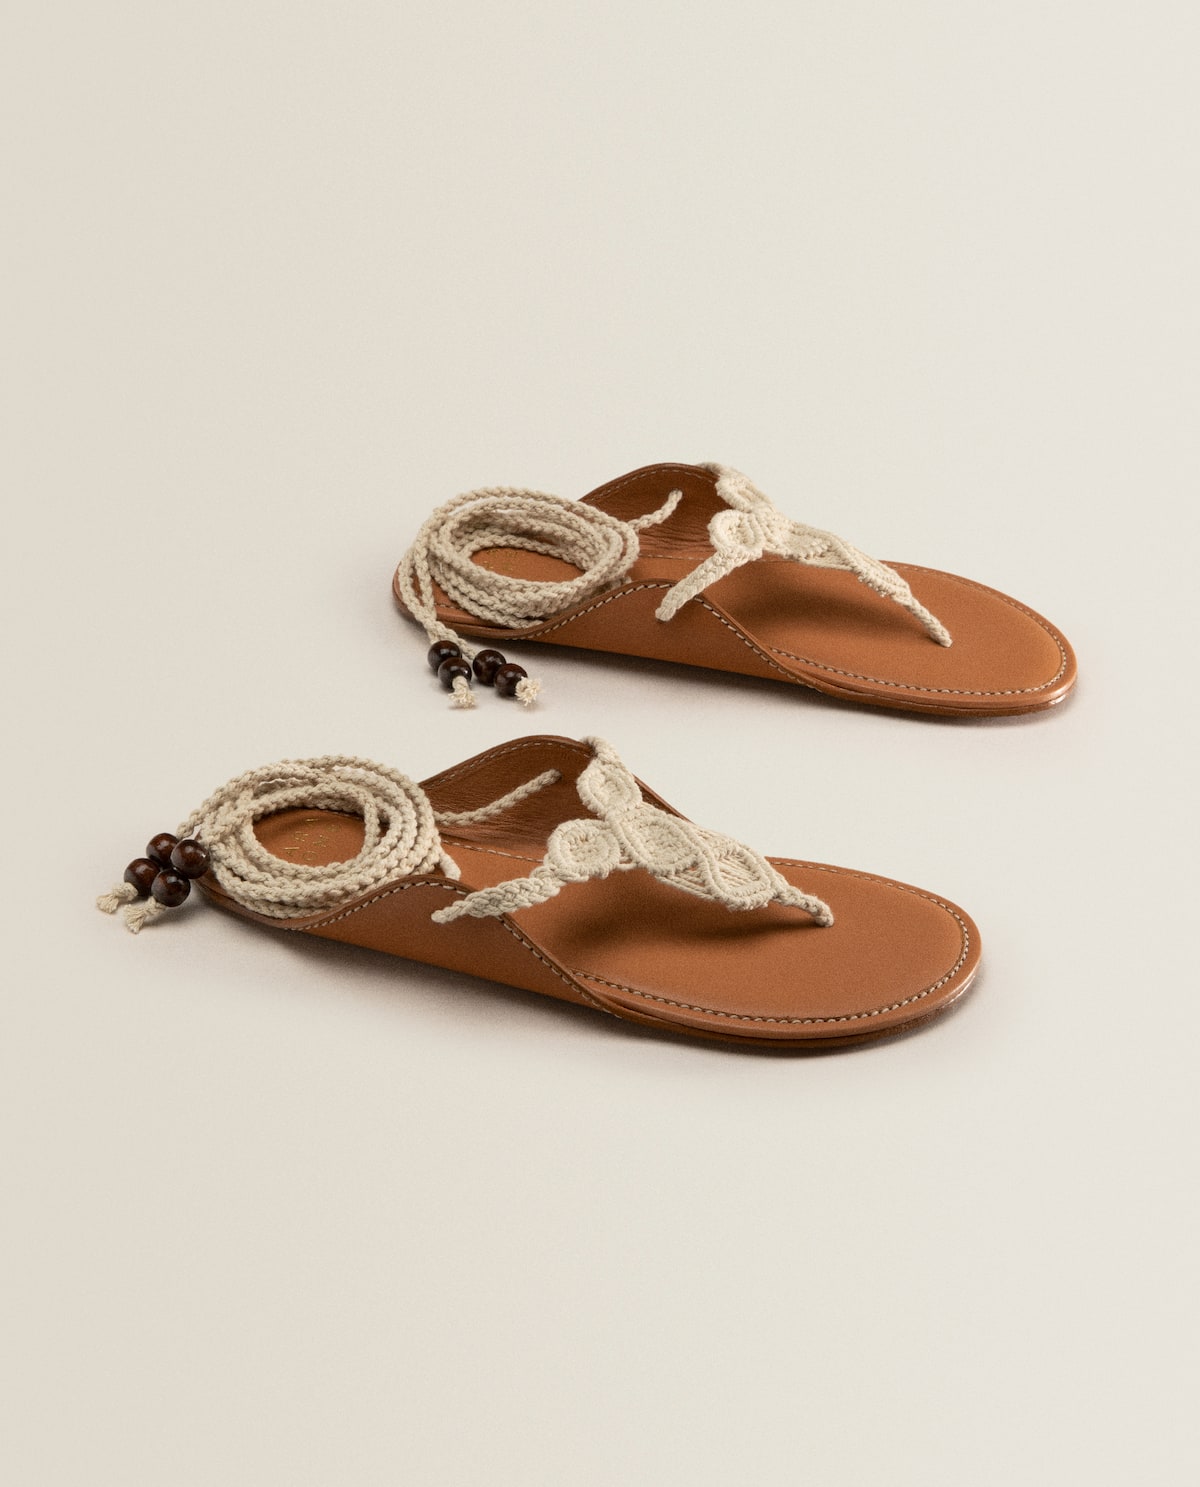 Zara Home: sandalias más bonitas y baratas, rompen todos los récords de ventas este verano